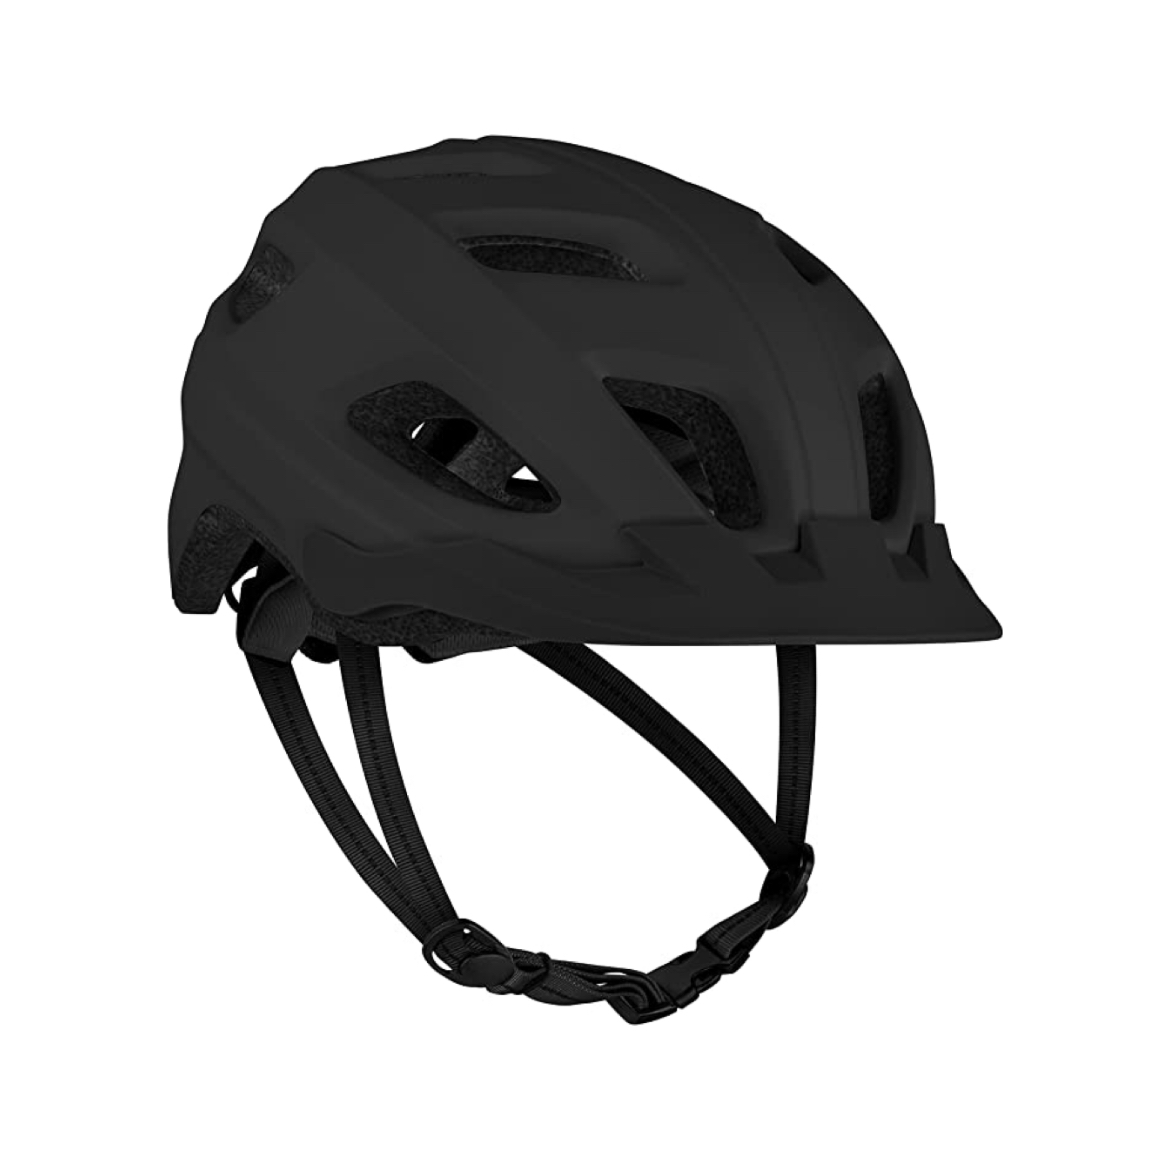 Helmet ng bisikleta na may LED safety light adjustable dial at removable visor